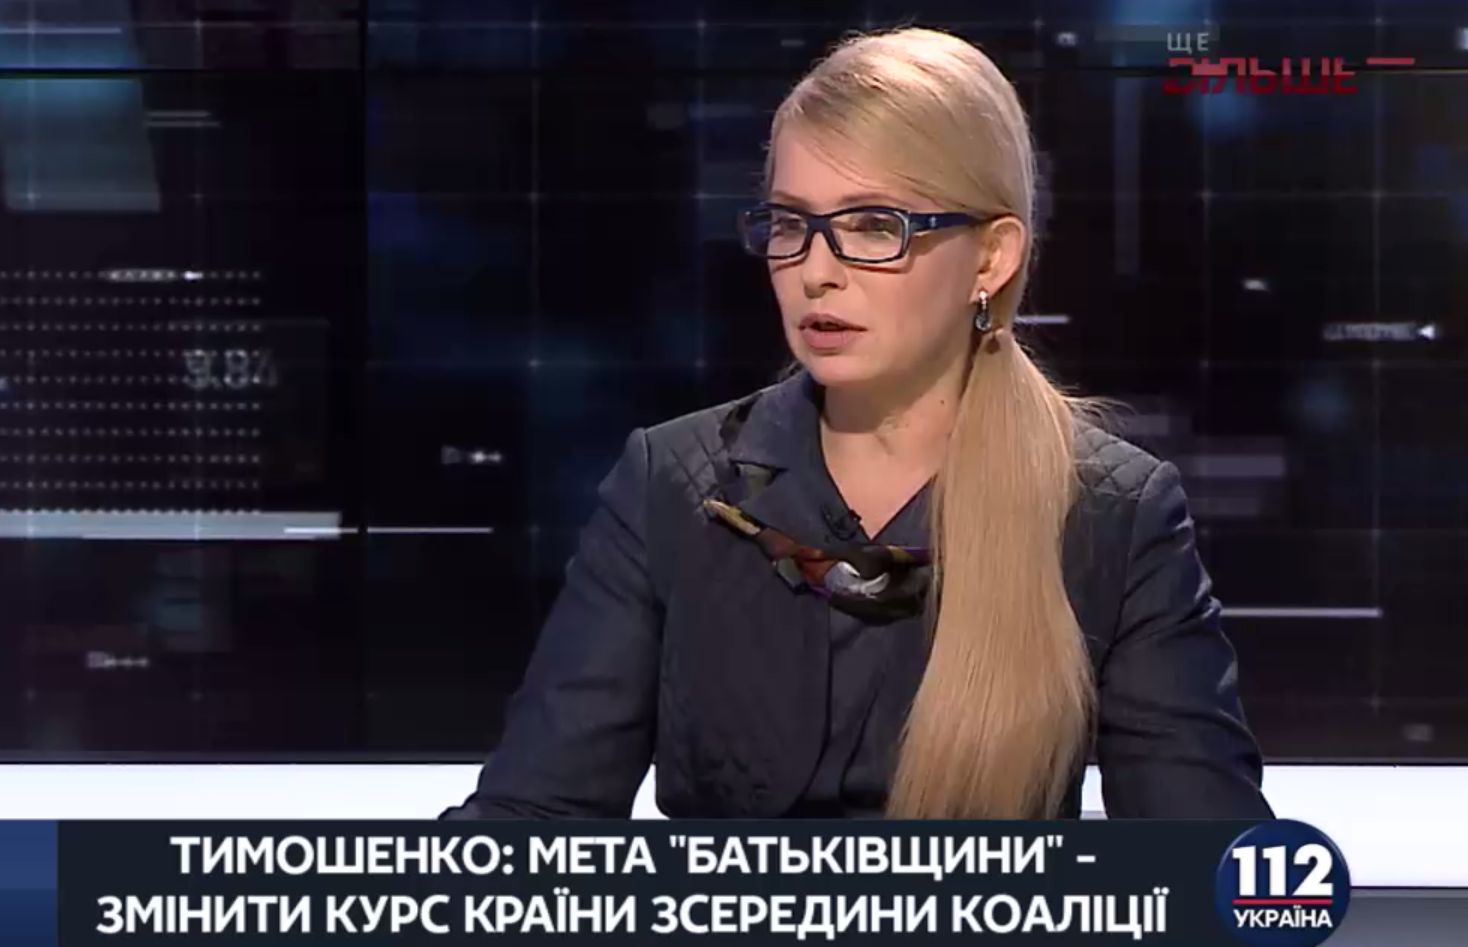 Тимошенко: Мне жаль, что Гройсман считает торгами переговоры по кризису